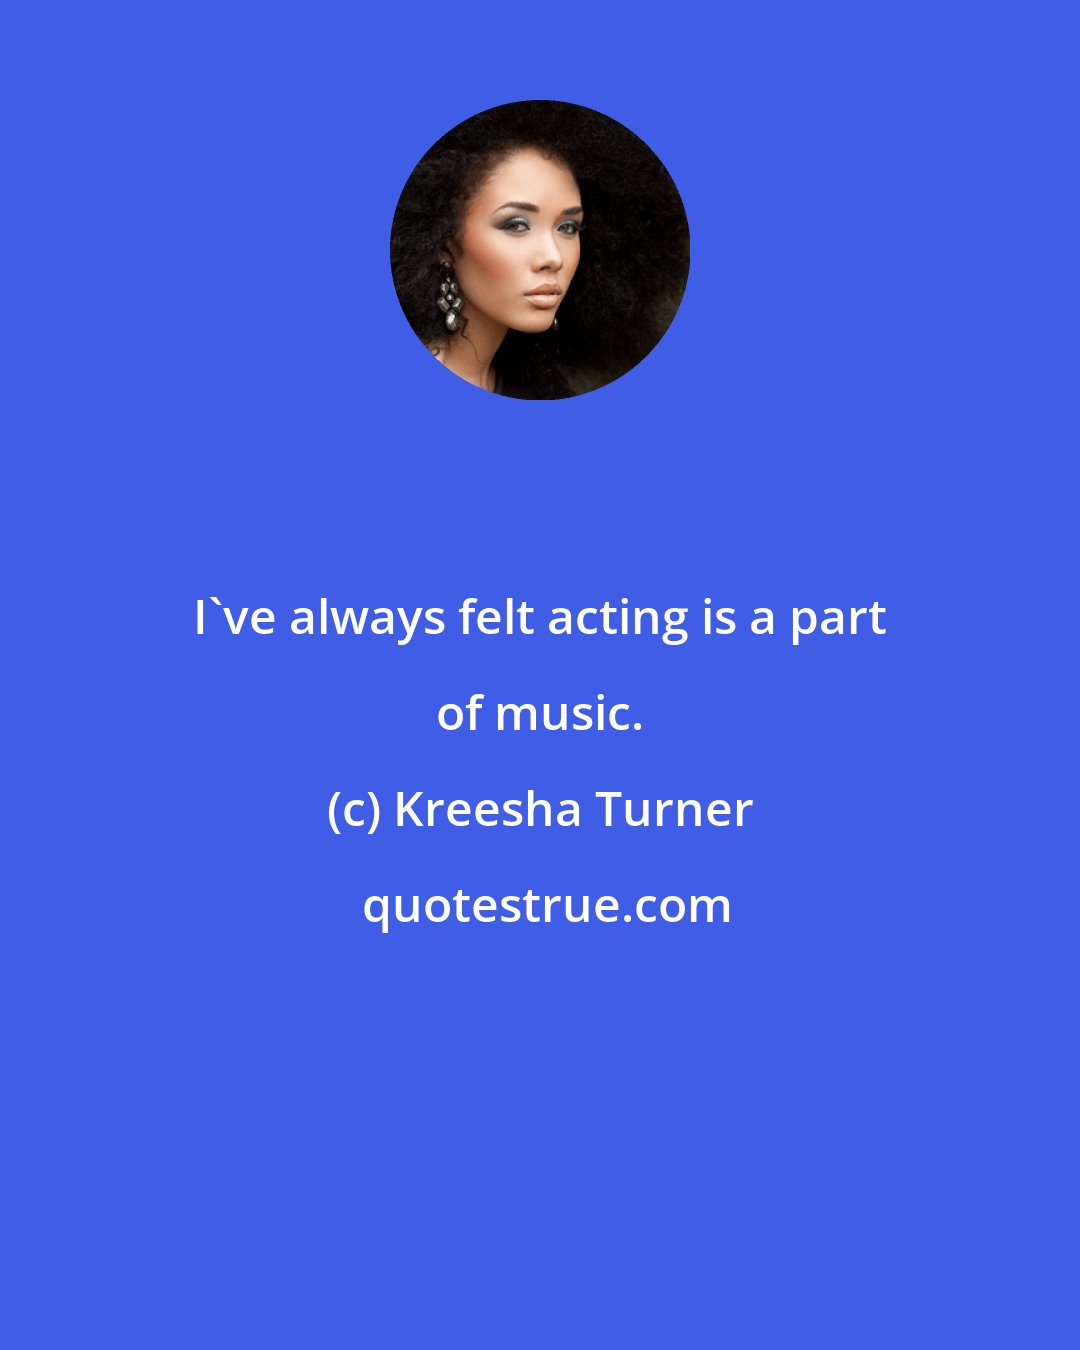 Kreesha Turner: I've always felt acting is a part of music.